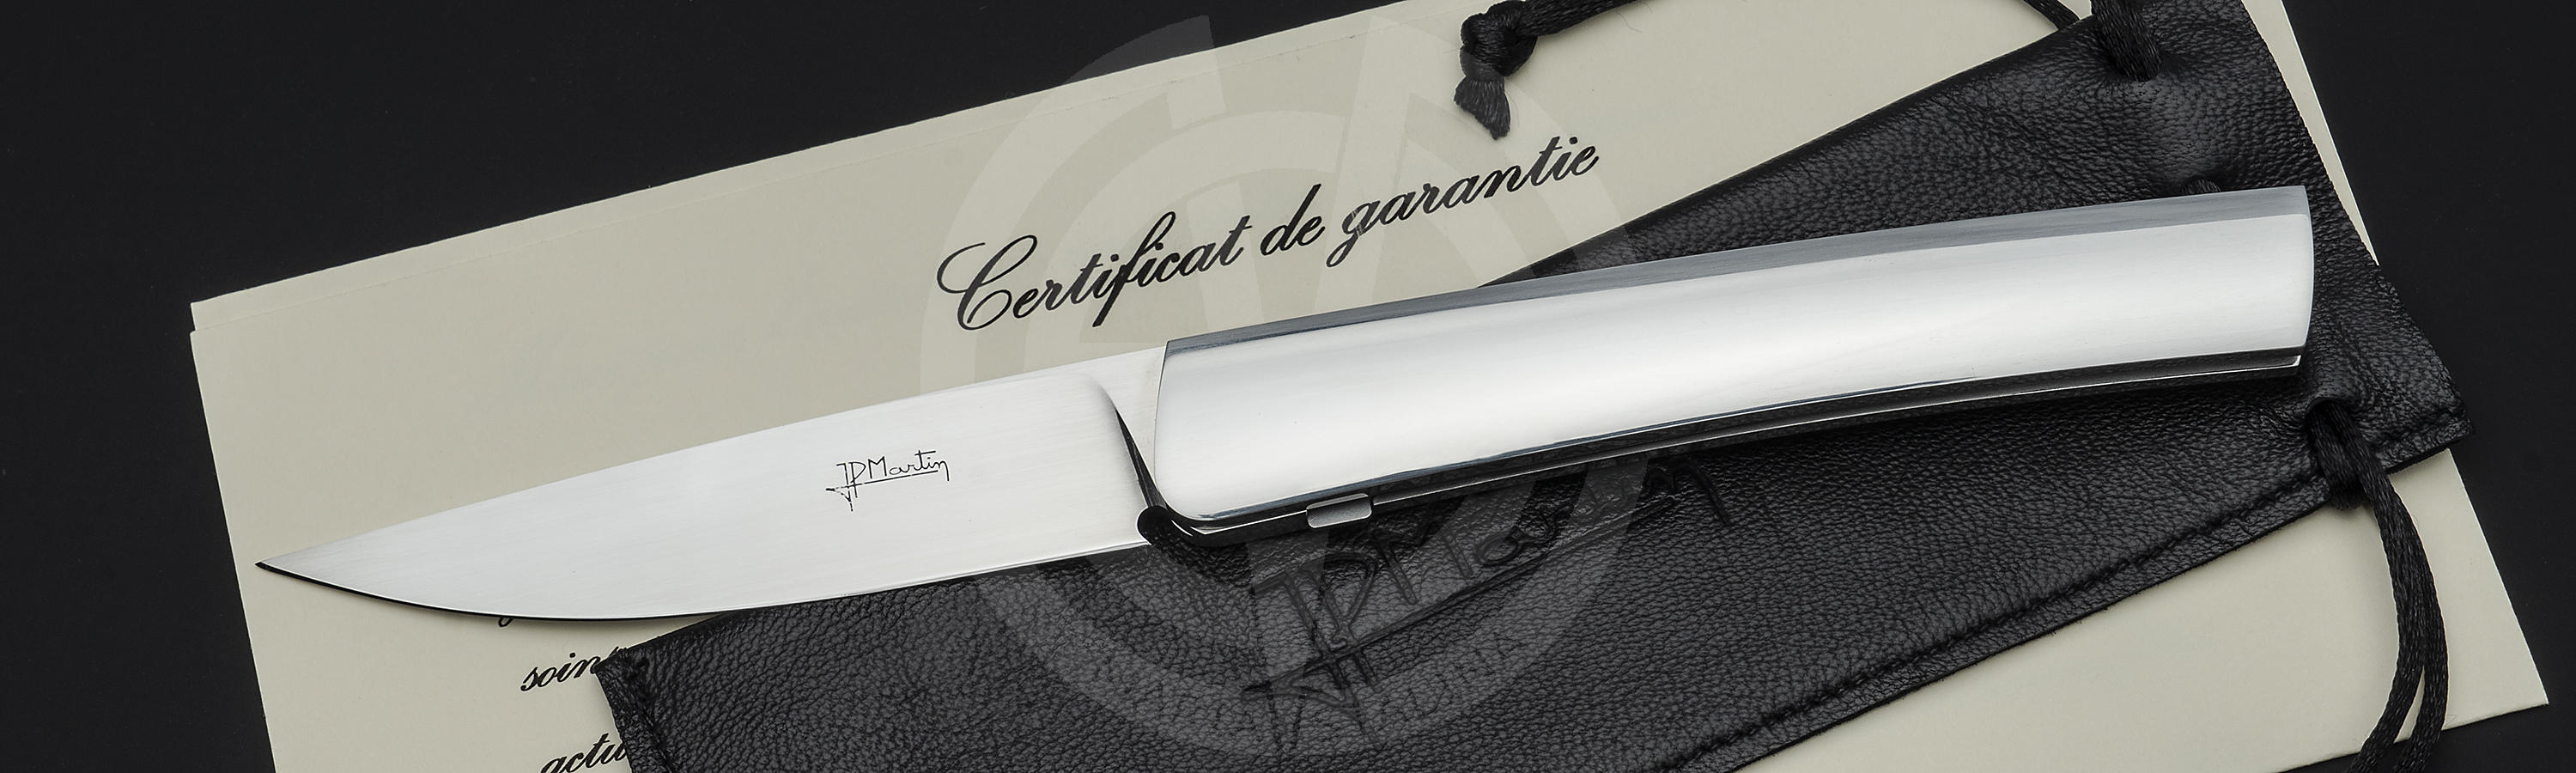 Certificate for Basic knife